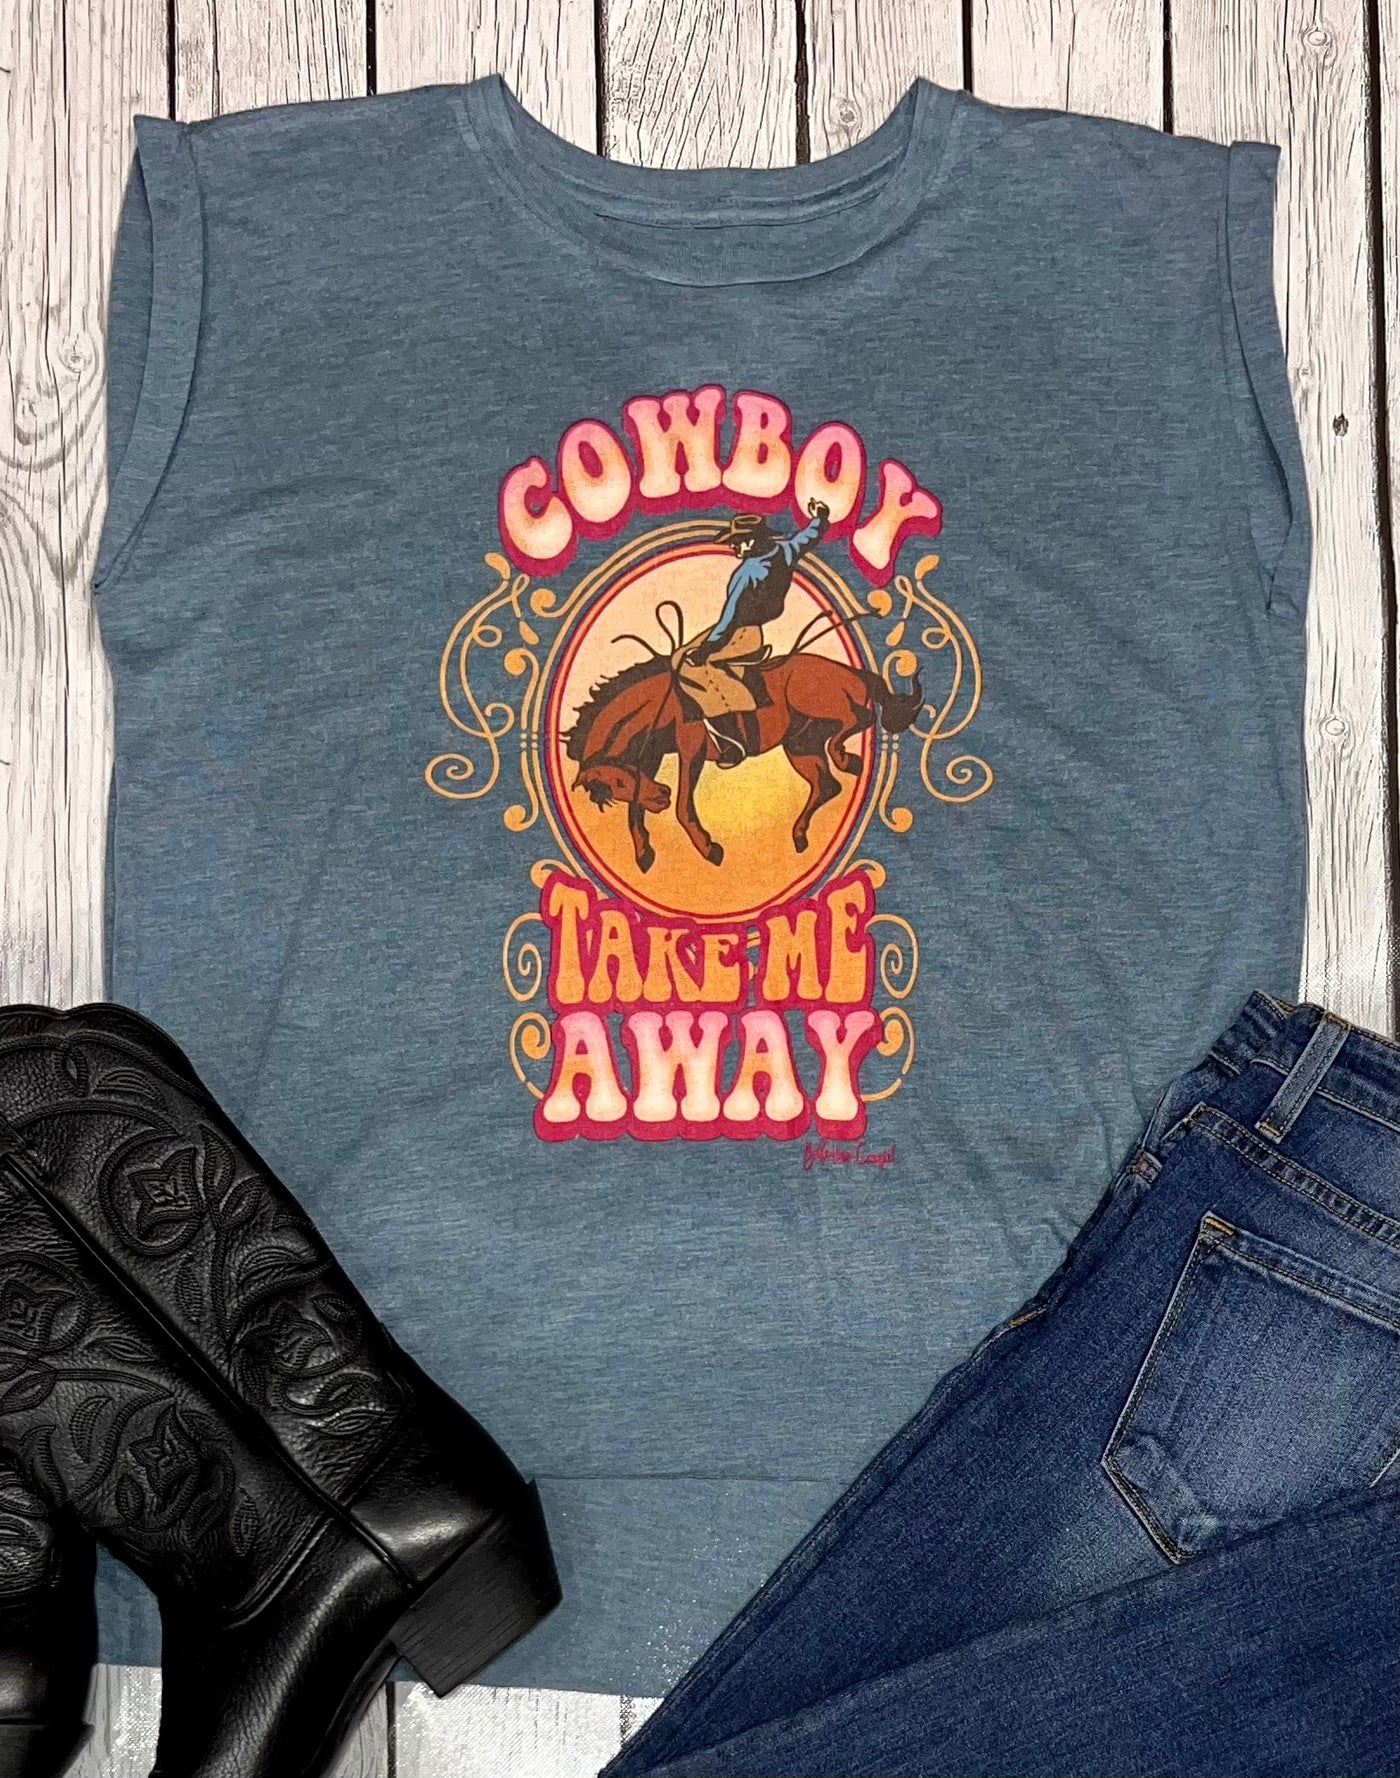 Cowboy Take me away